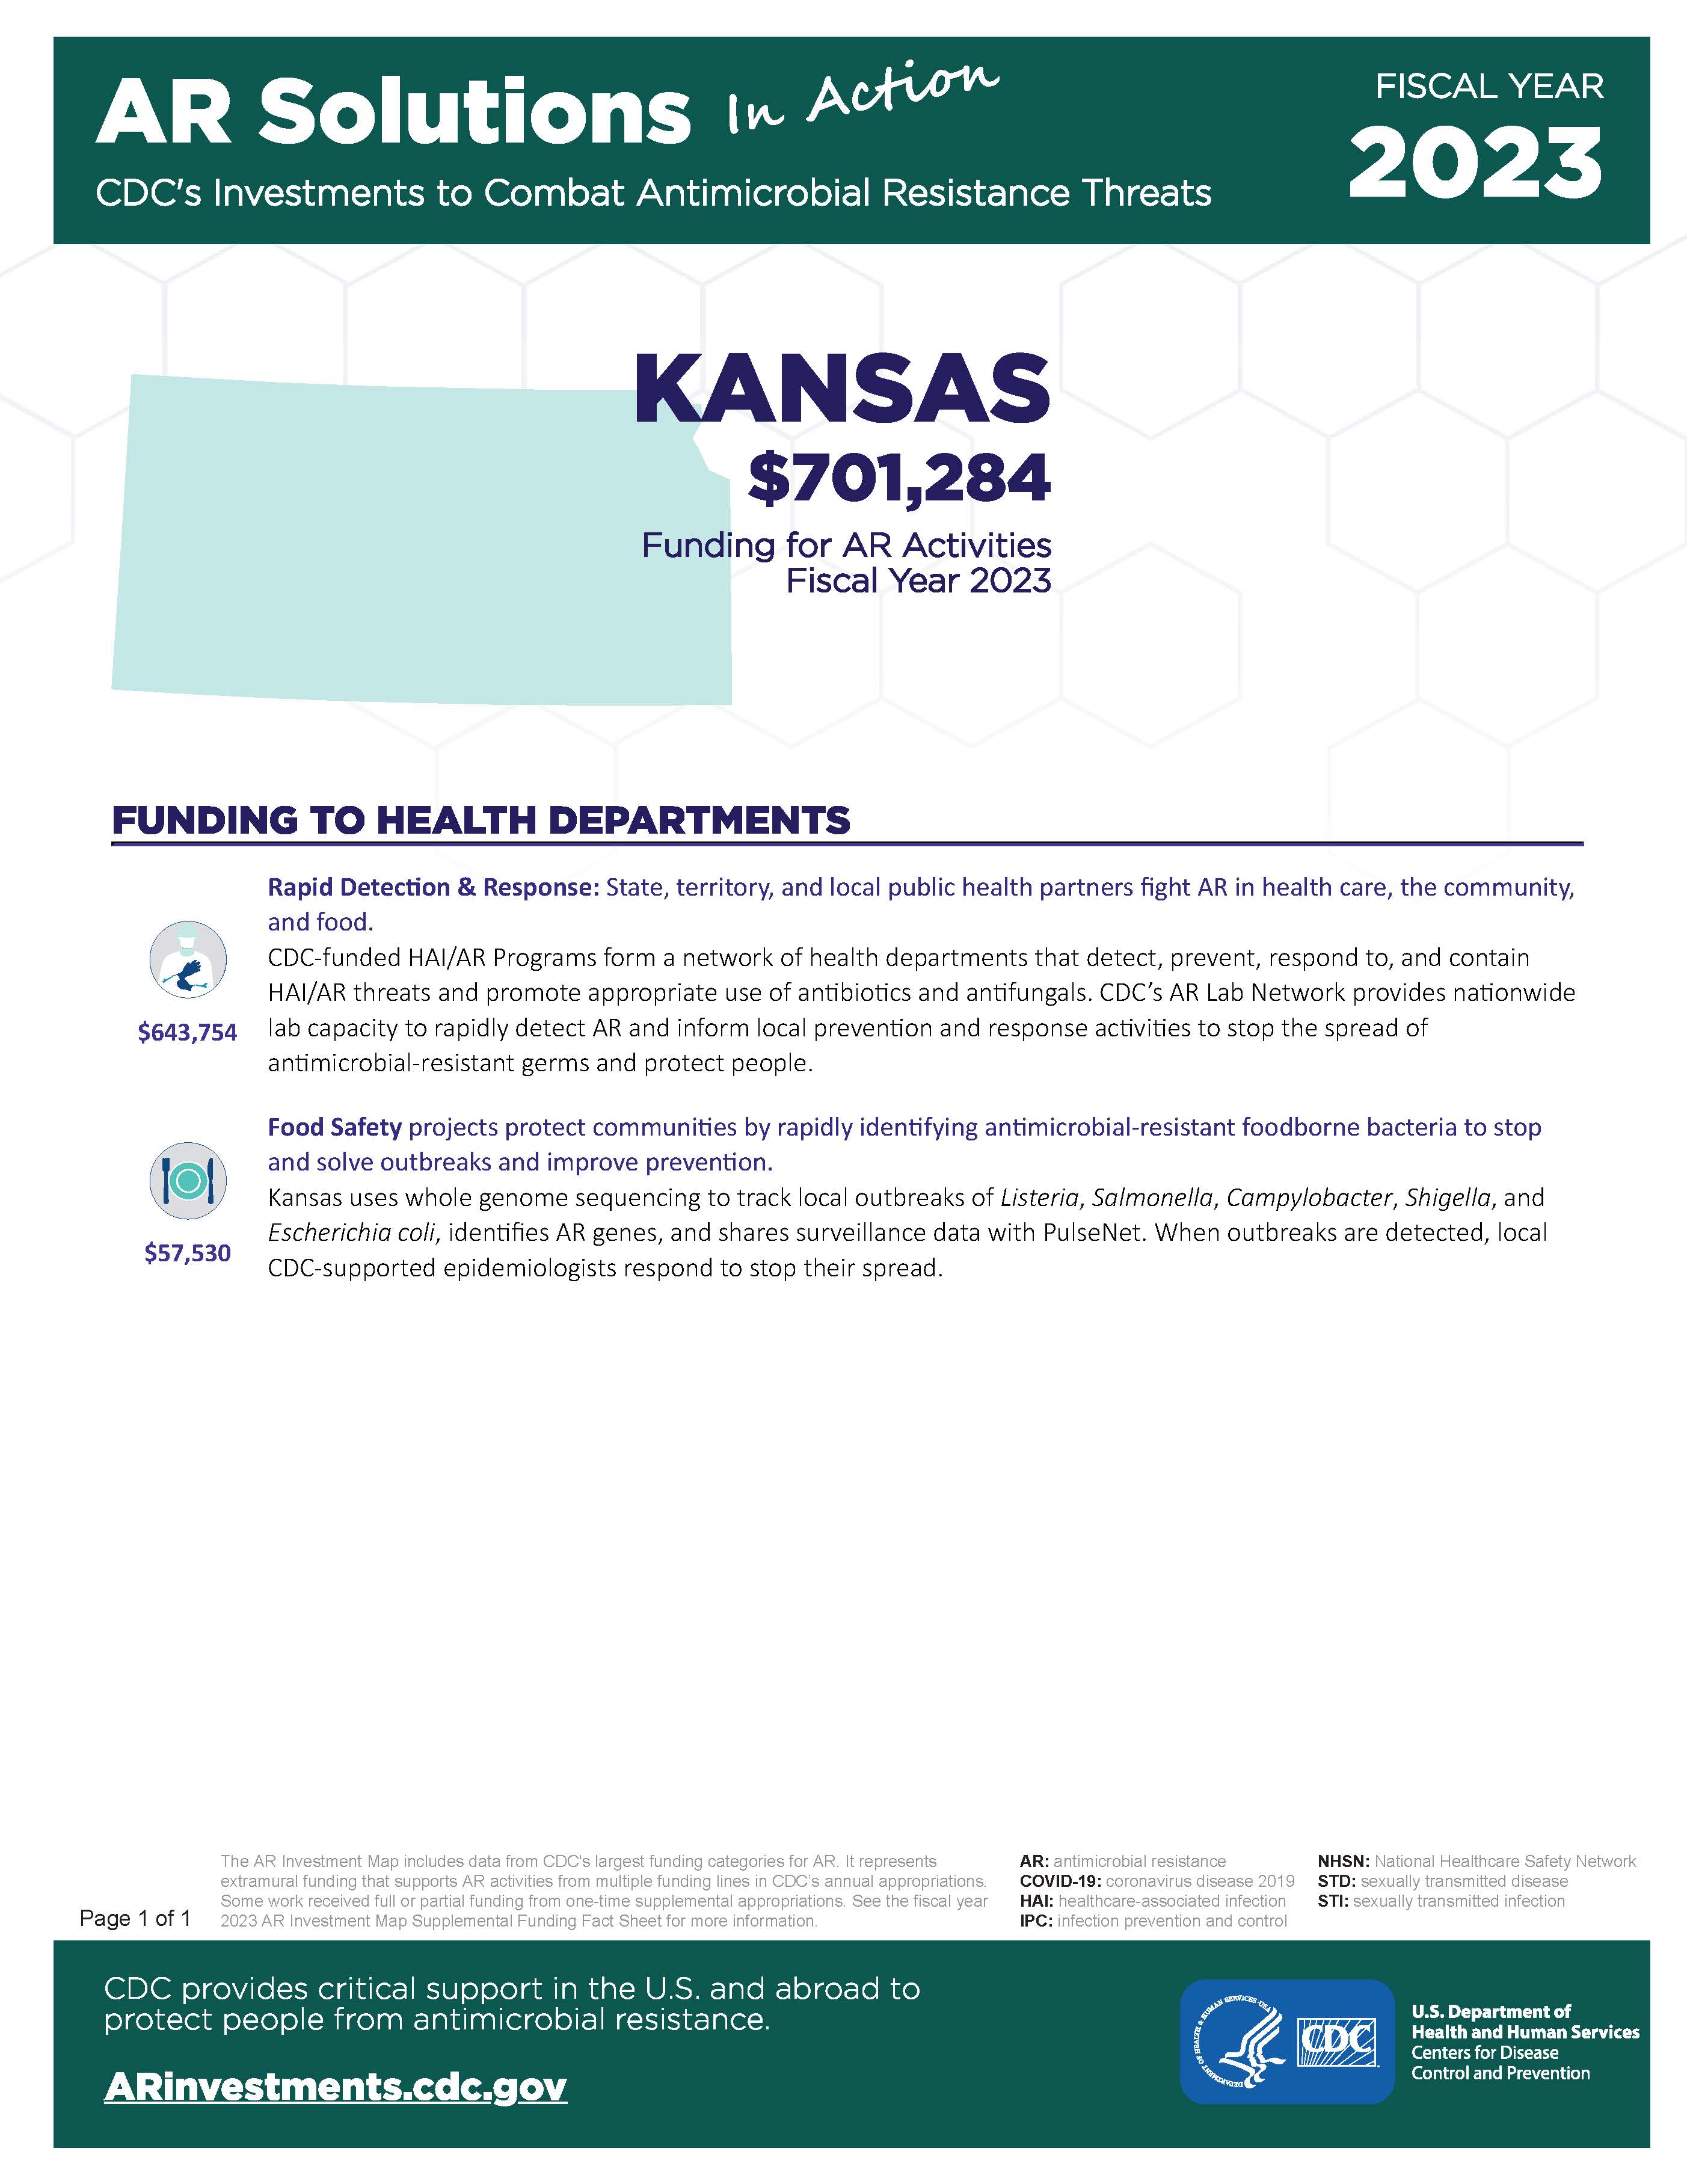 View Factsheet for Kansas